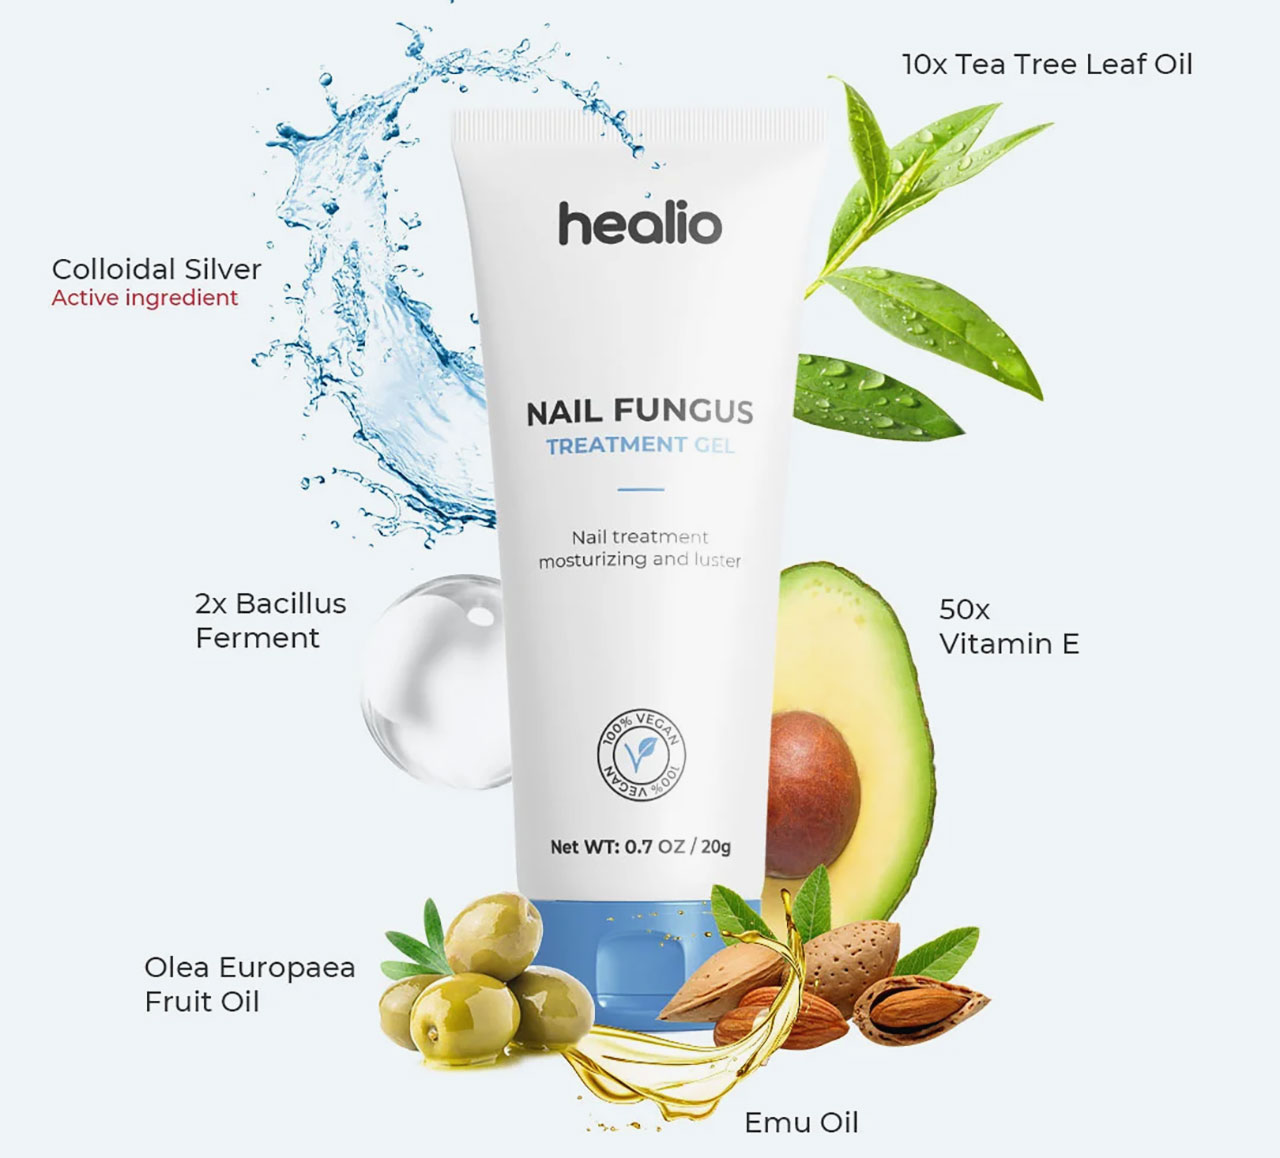 Healio Nail Fungus Treatment Gel Ingredients